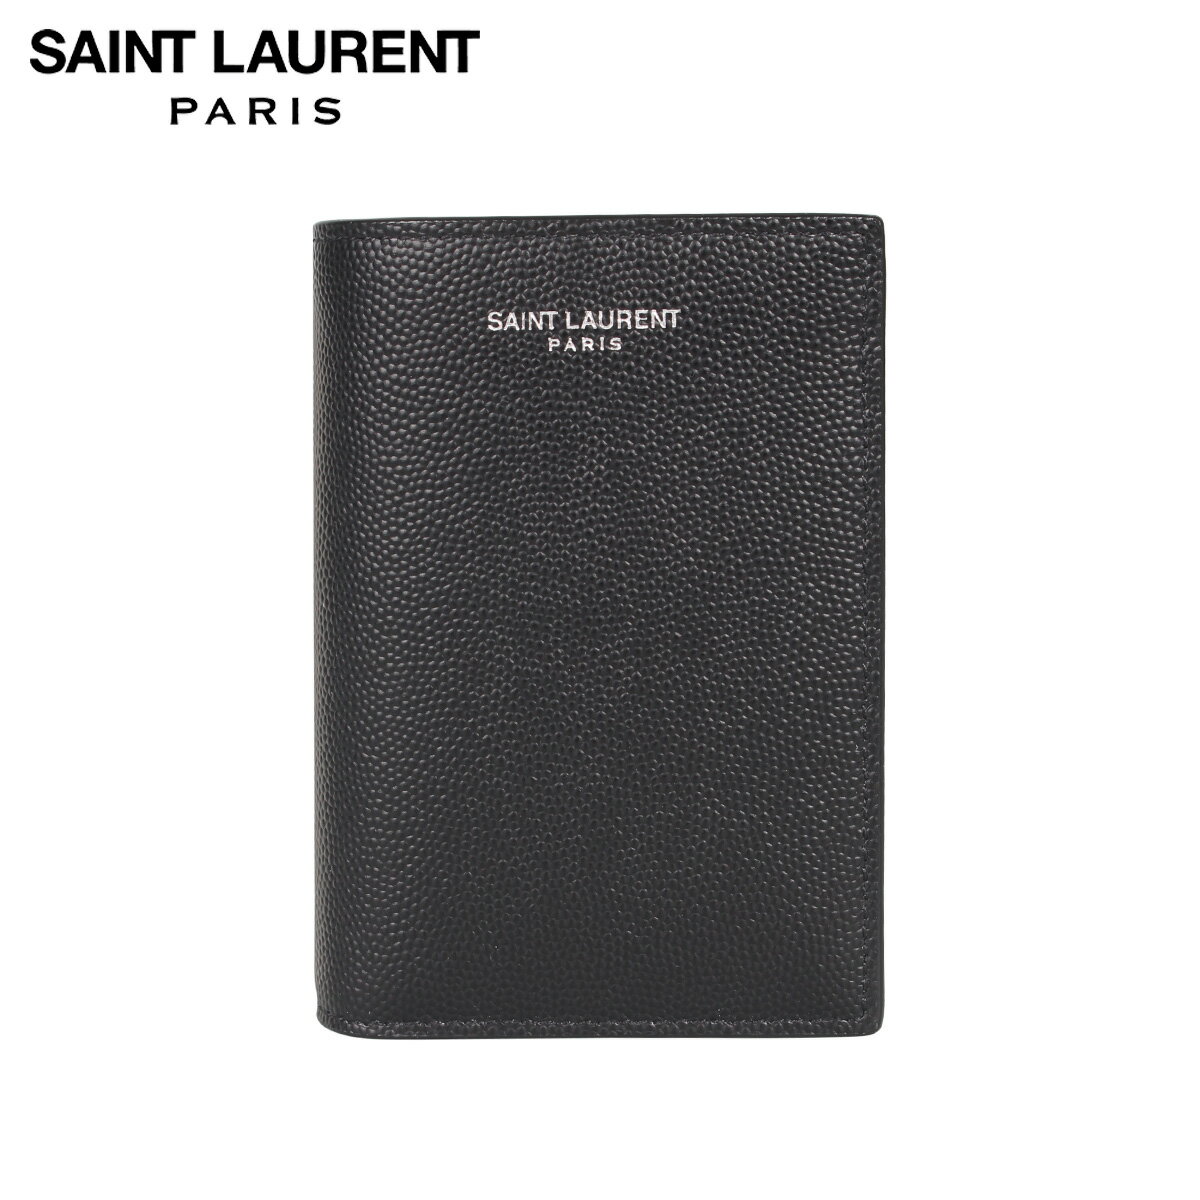 サンローラン 二つ折り財布 メンズ SAINT LAURENT PARIS サンローラン パリ 財布 二つ折り メンズ CARD WALLET ブラック 黒 607051BTY0N